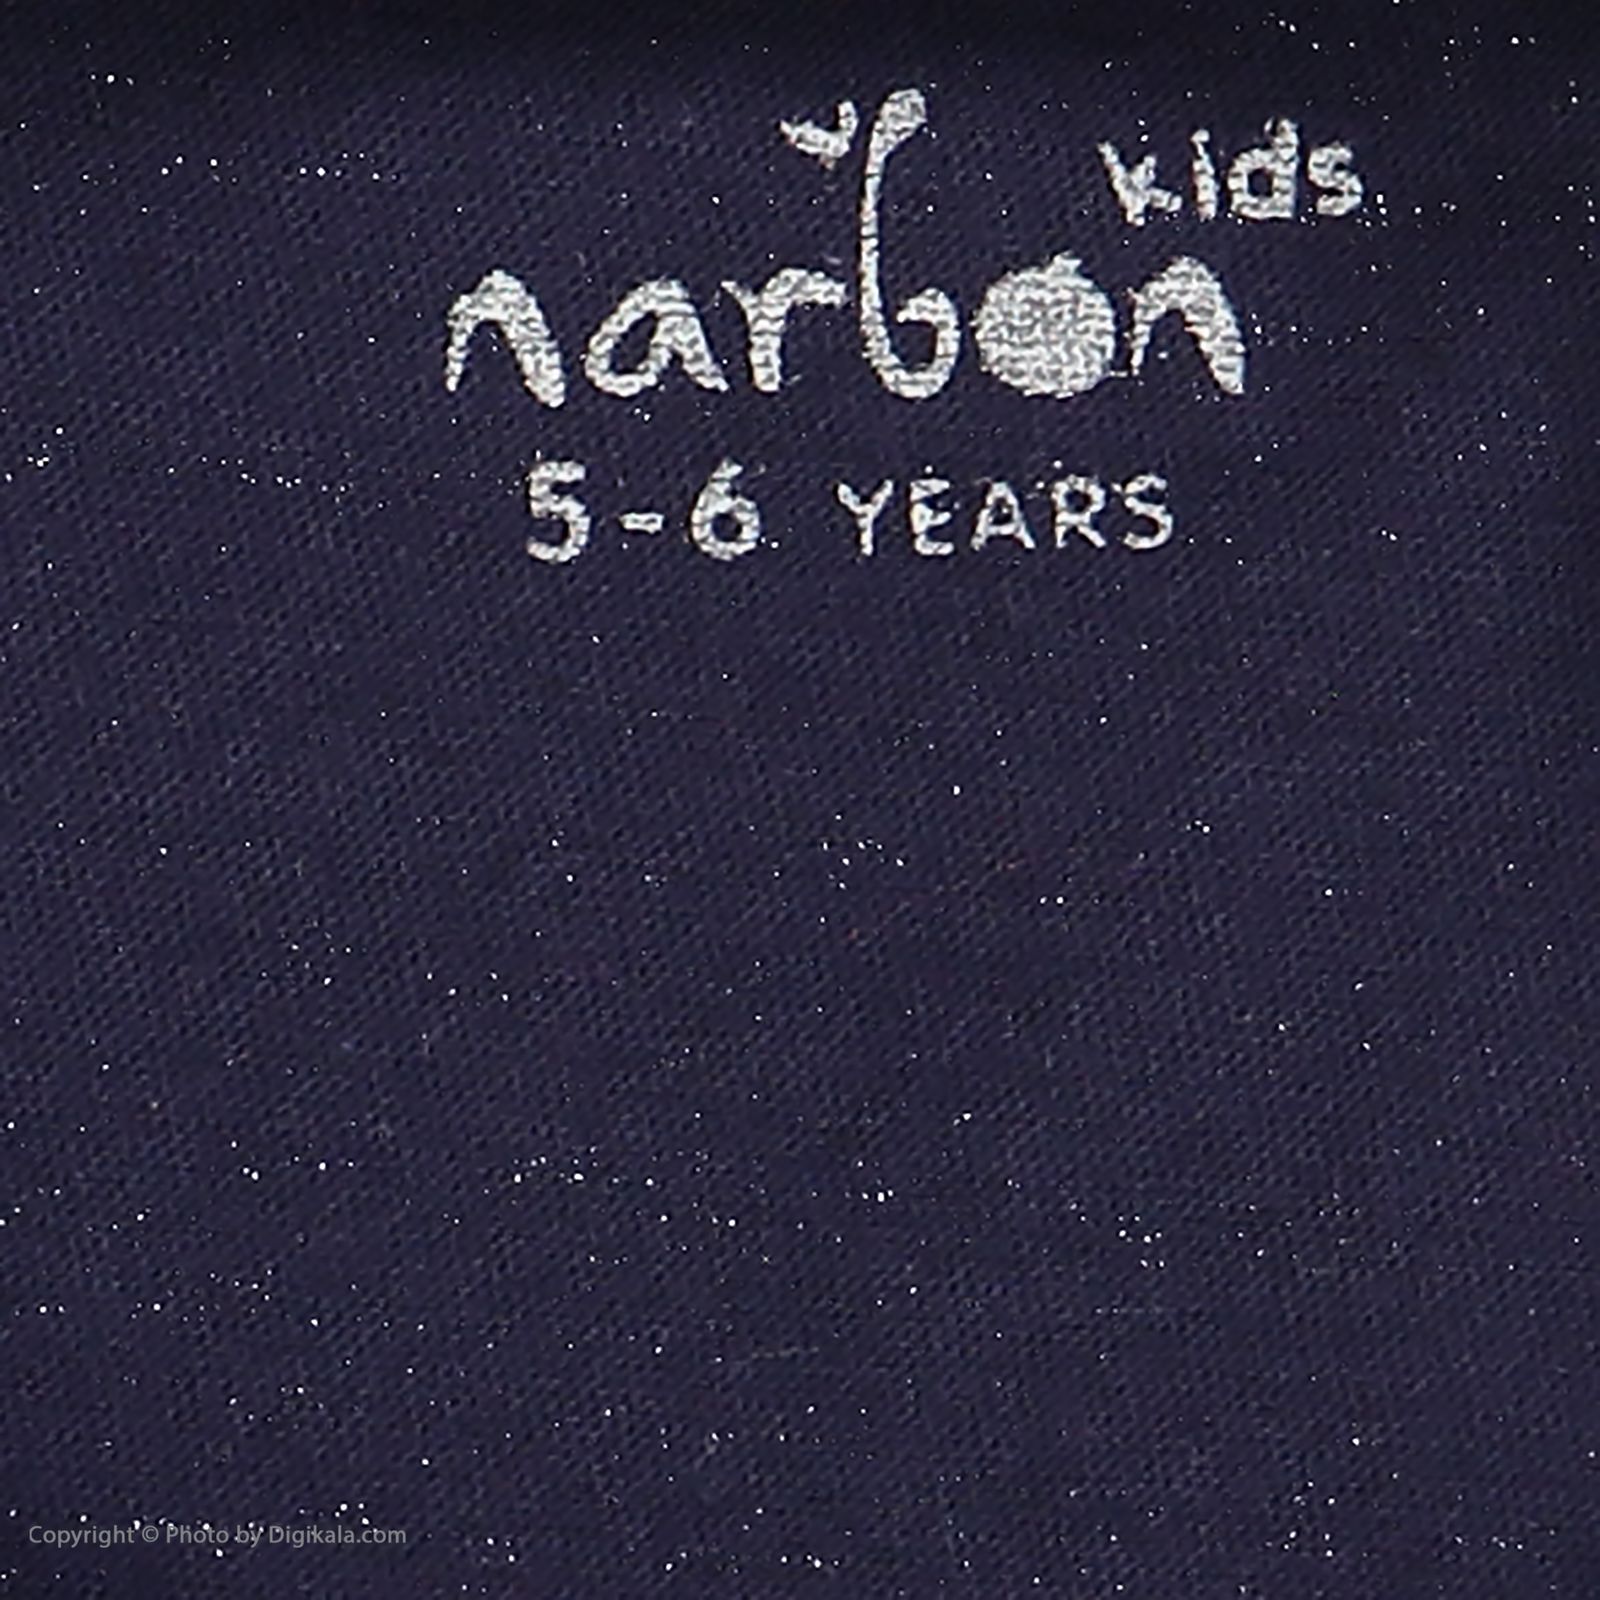 تی شرت بچگانه ناربن مدل 1521182-59 -  - 5